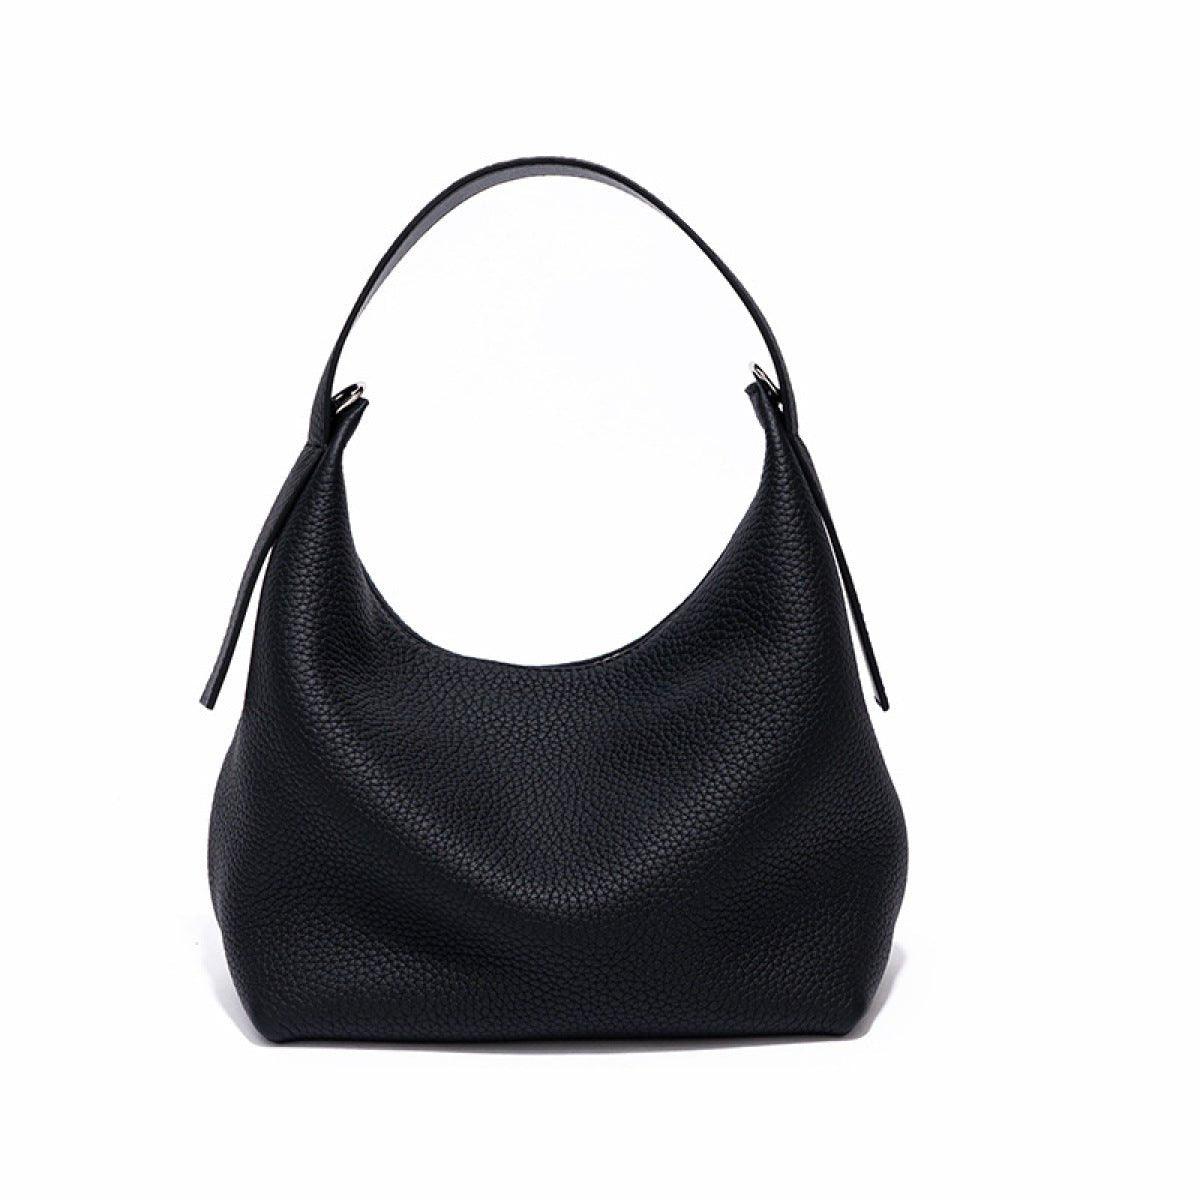 Casual Zipper Handbag With Lengthened Shoulder Strap